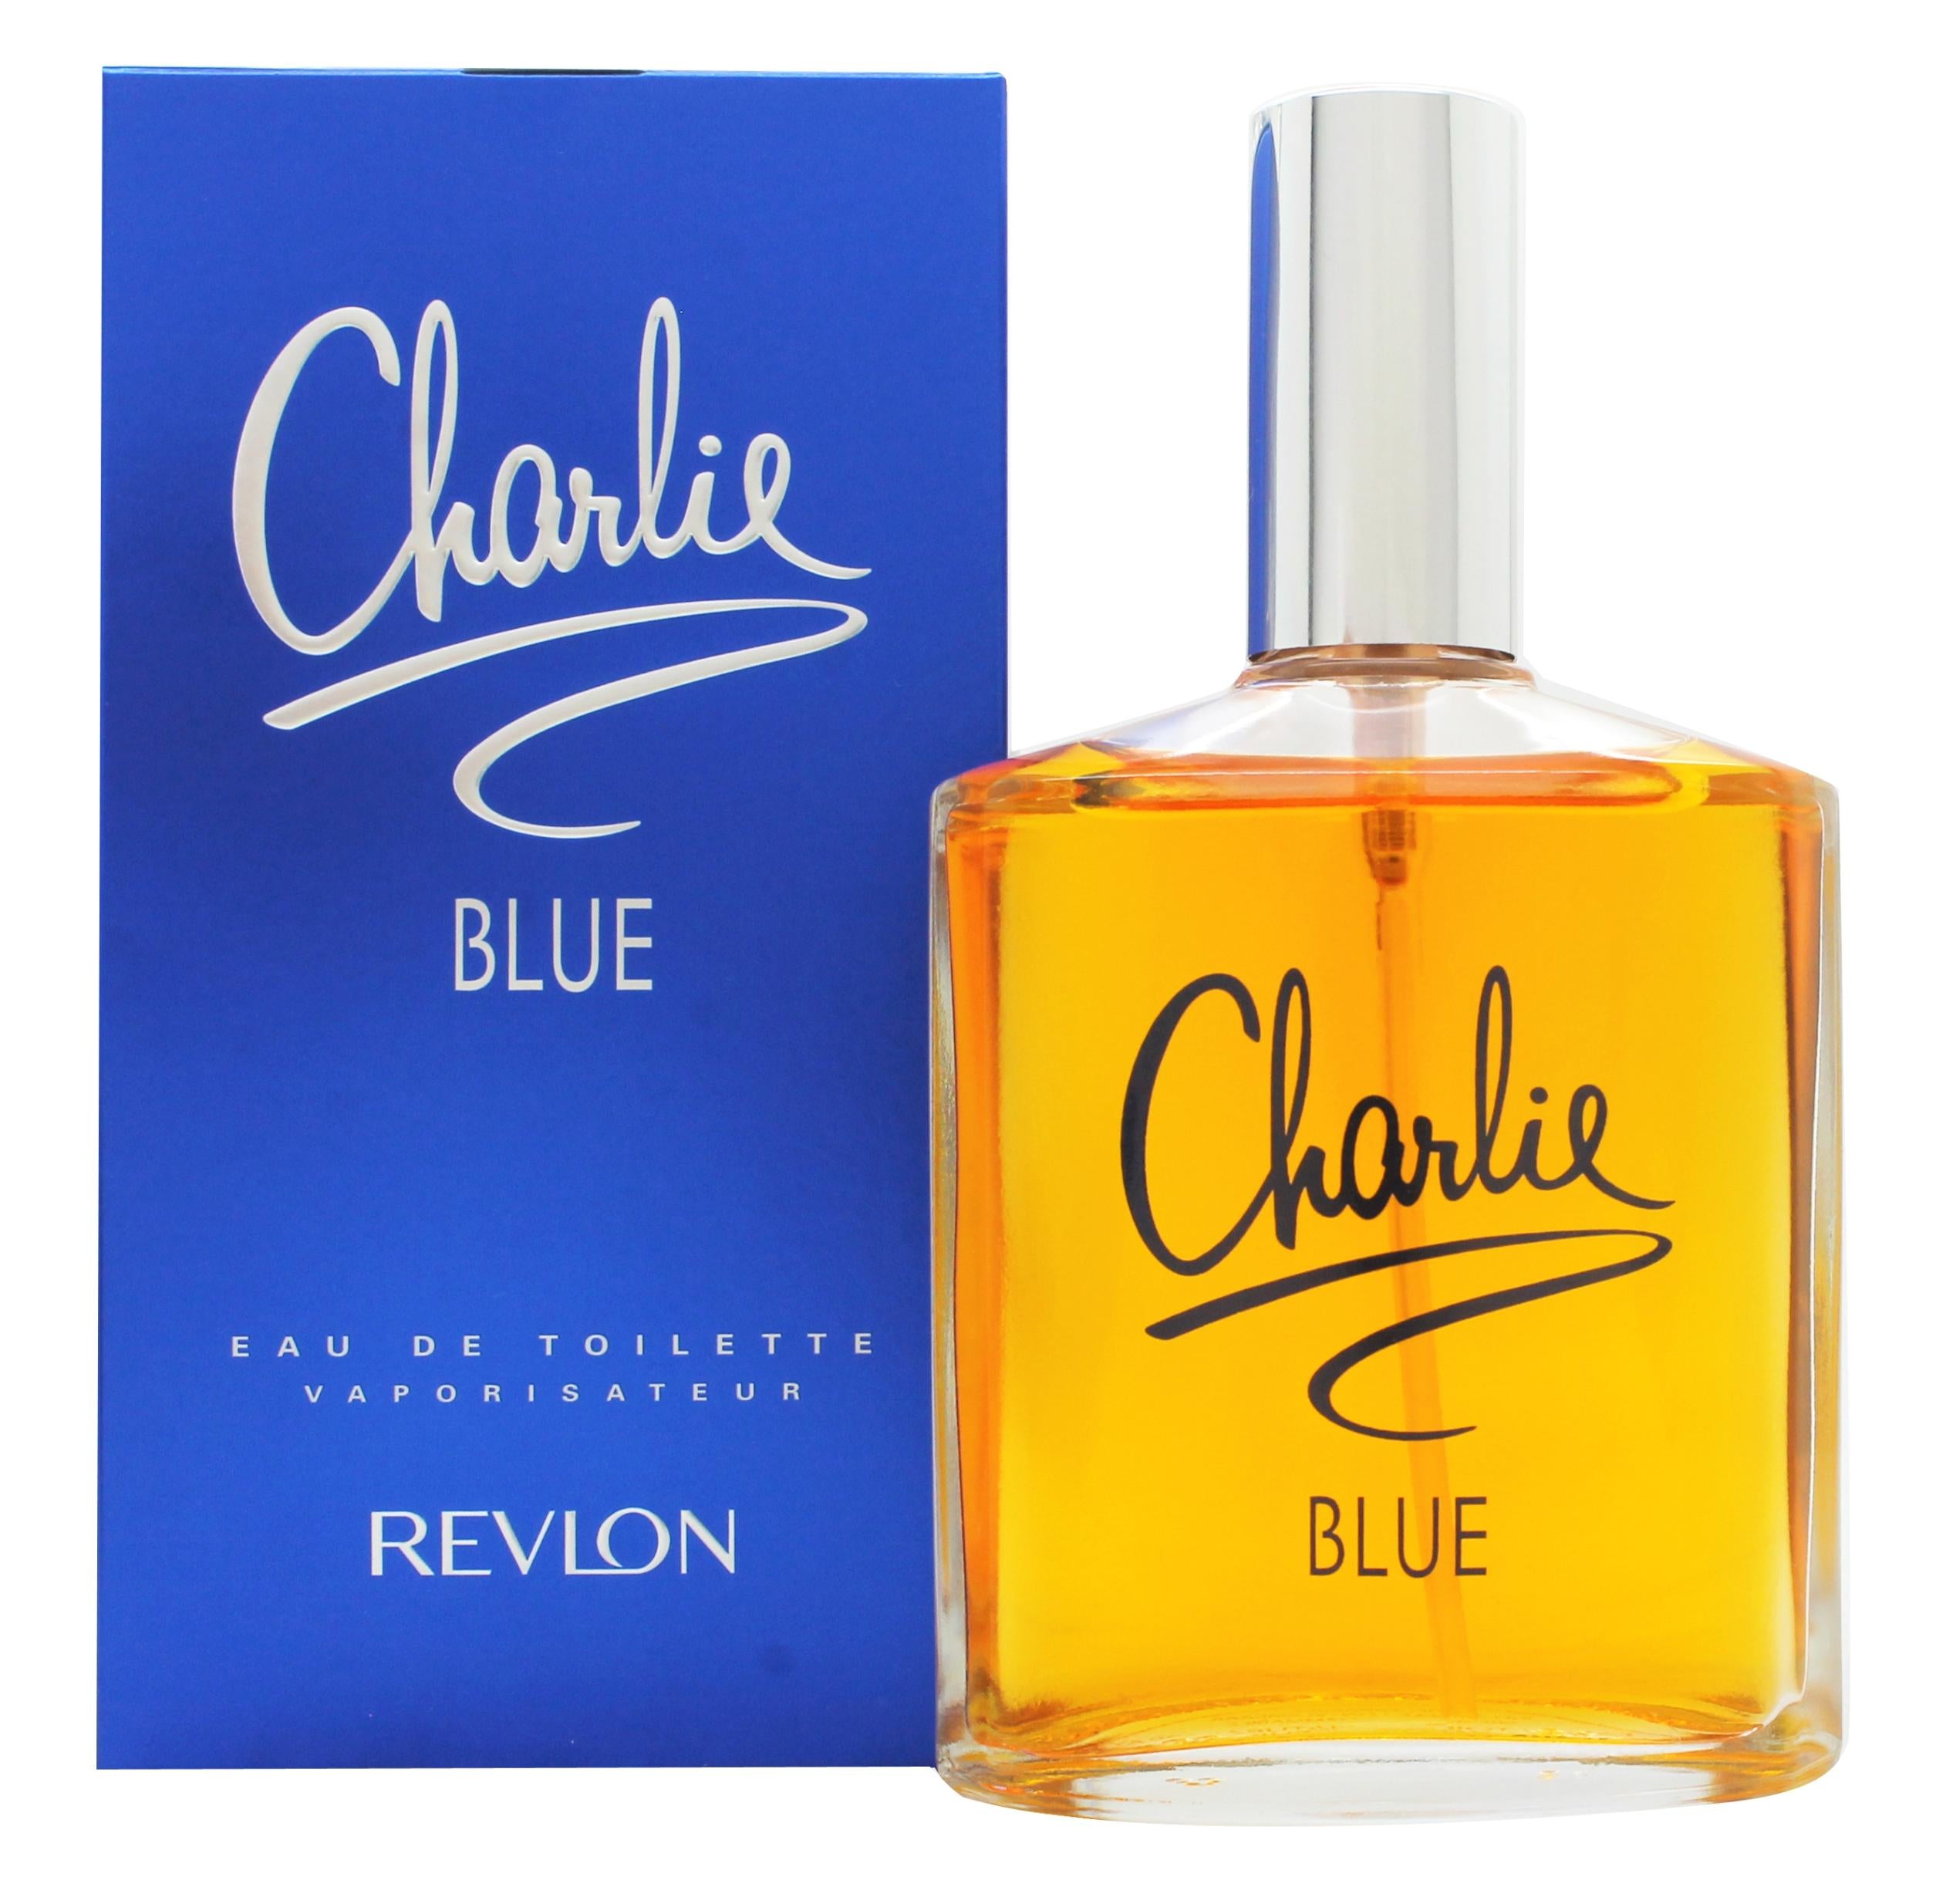 View Revlon Charlie Blue Eau de Toilette 100ml Spray information